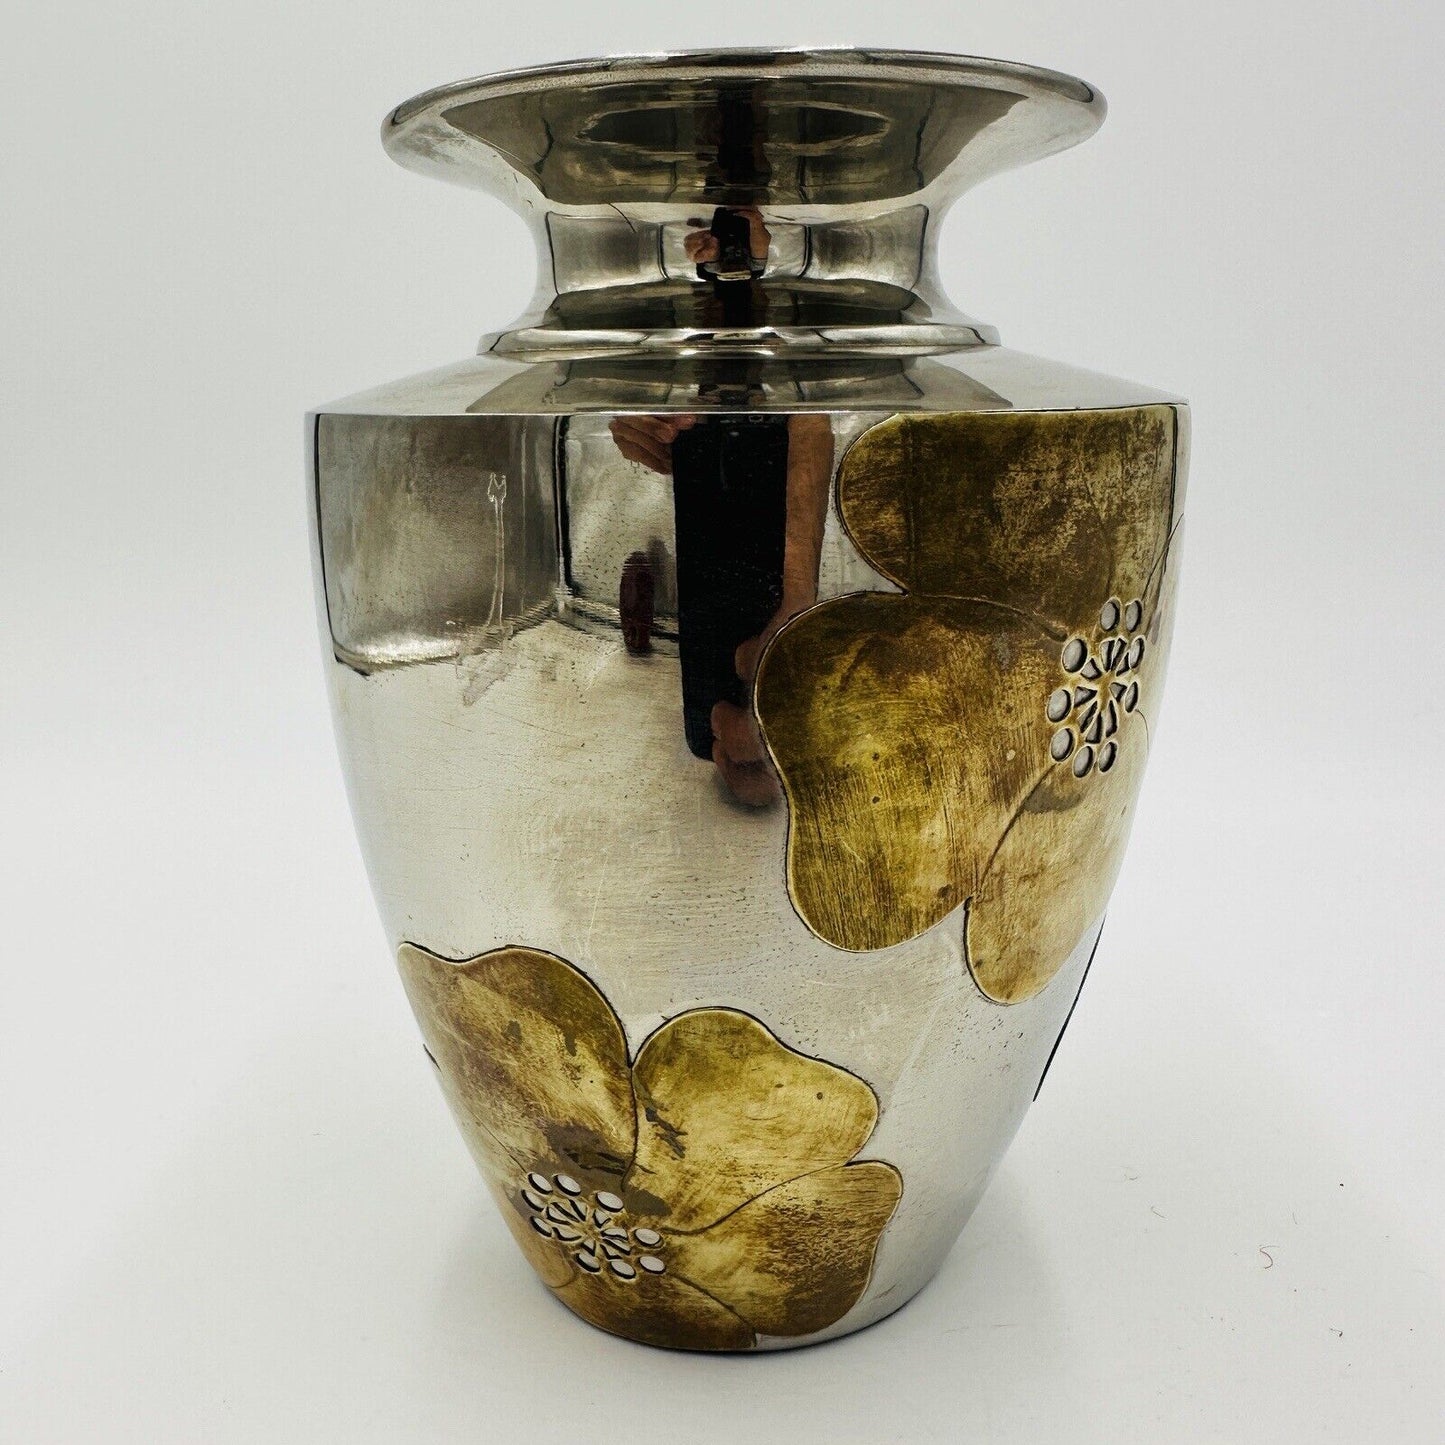 Ethan Allen Home Interior Nickel & Brass Vase Mid Century Modern Applied Flower